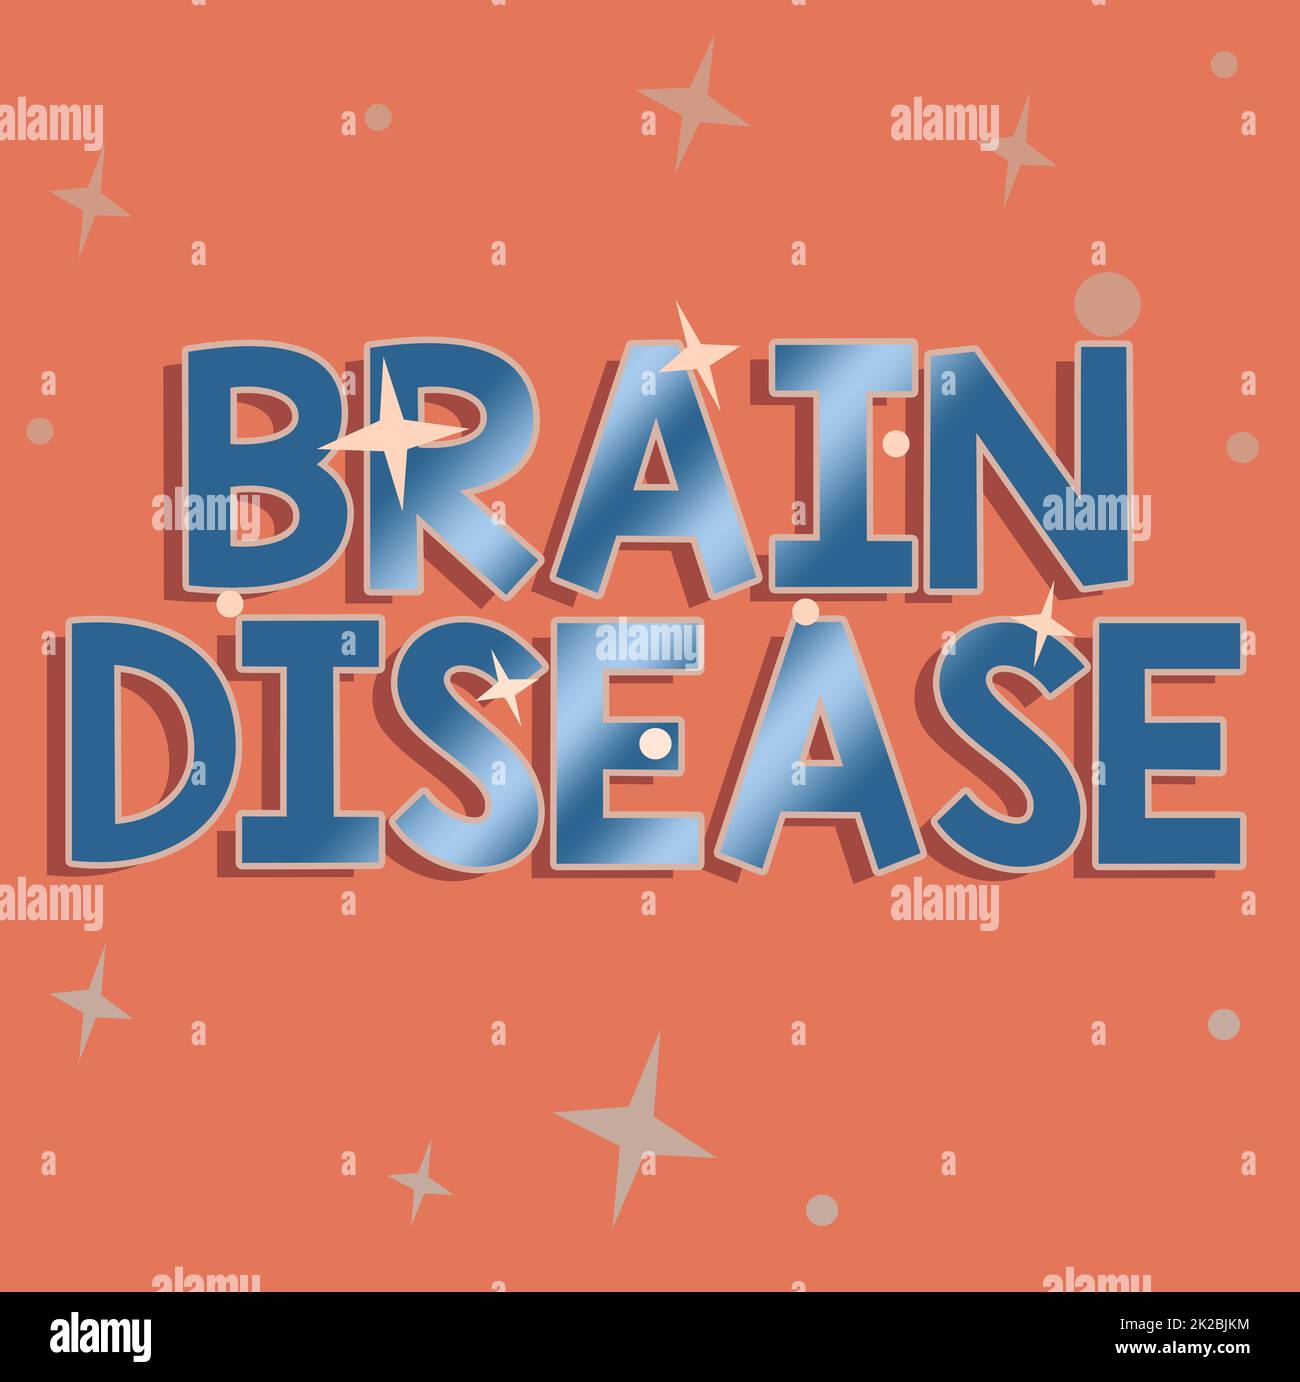 Handschrift Text Gehirnkrankheit, Wort für eine neurologische Störung, die das System verschlechtert ist Nerven Linie illustrierte Hintergründe mit verschiedenen Sh Stockfoto